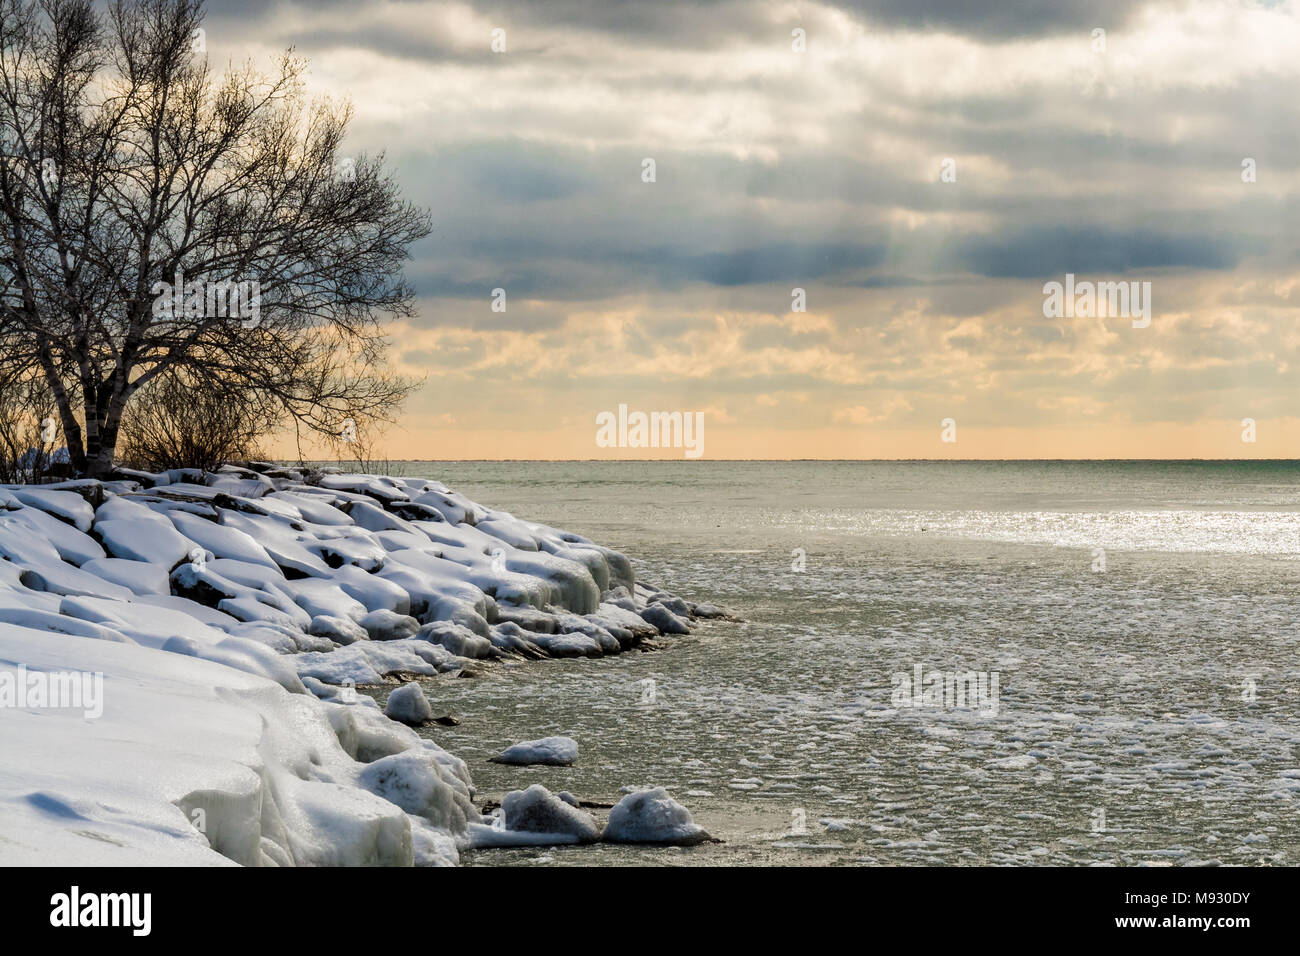 Winterlandschaft Szene mit weißen Schnee und eisigen Wasser See Küste, an einem schönen sonnigen Tag mit hohem Kontrast Himmel Stockfoto